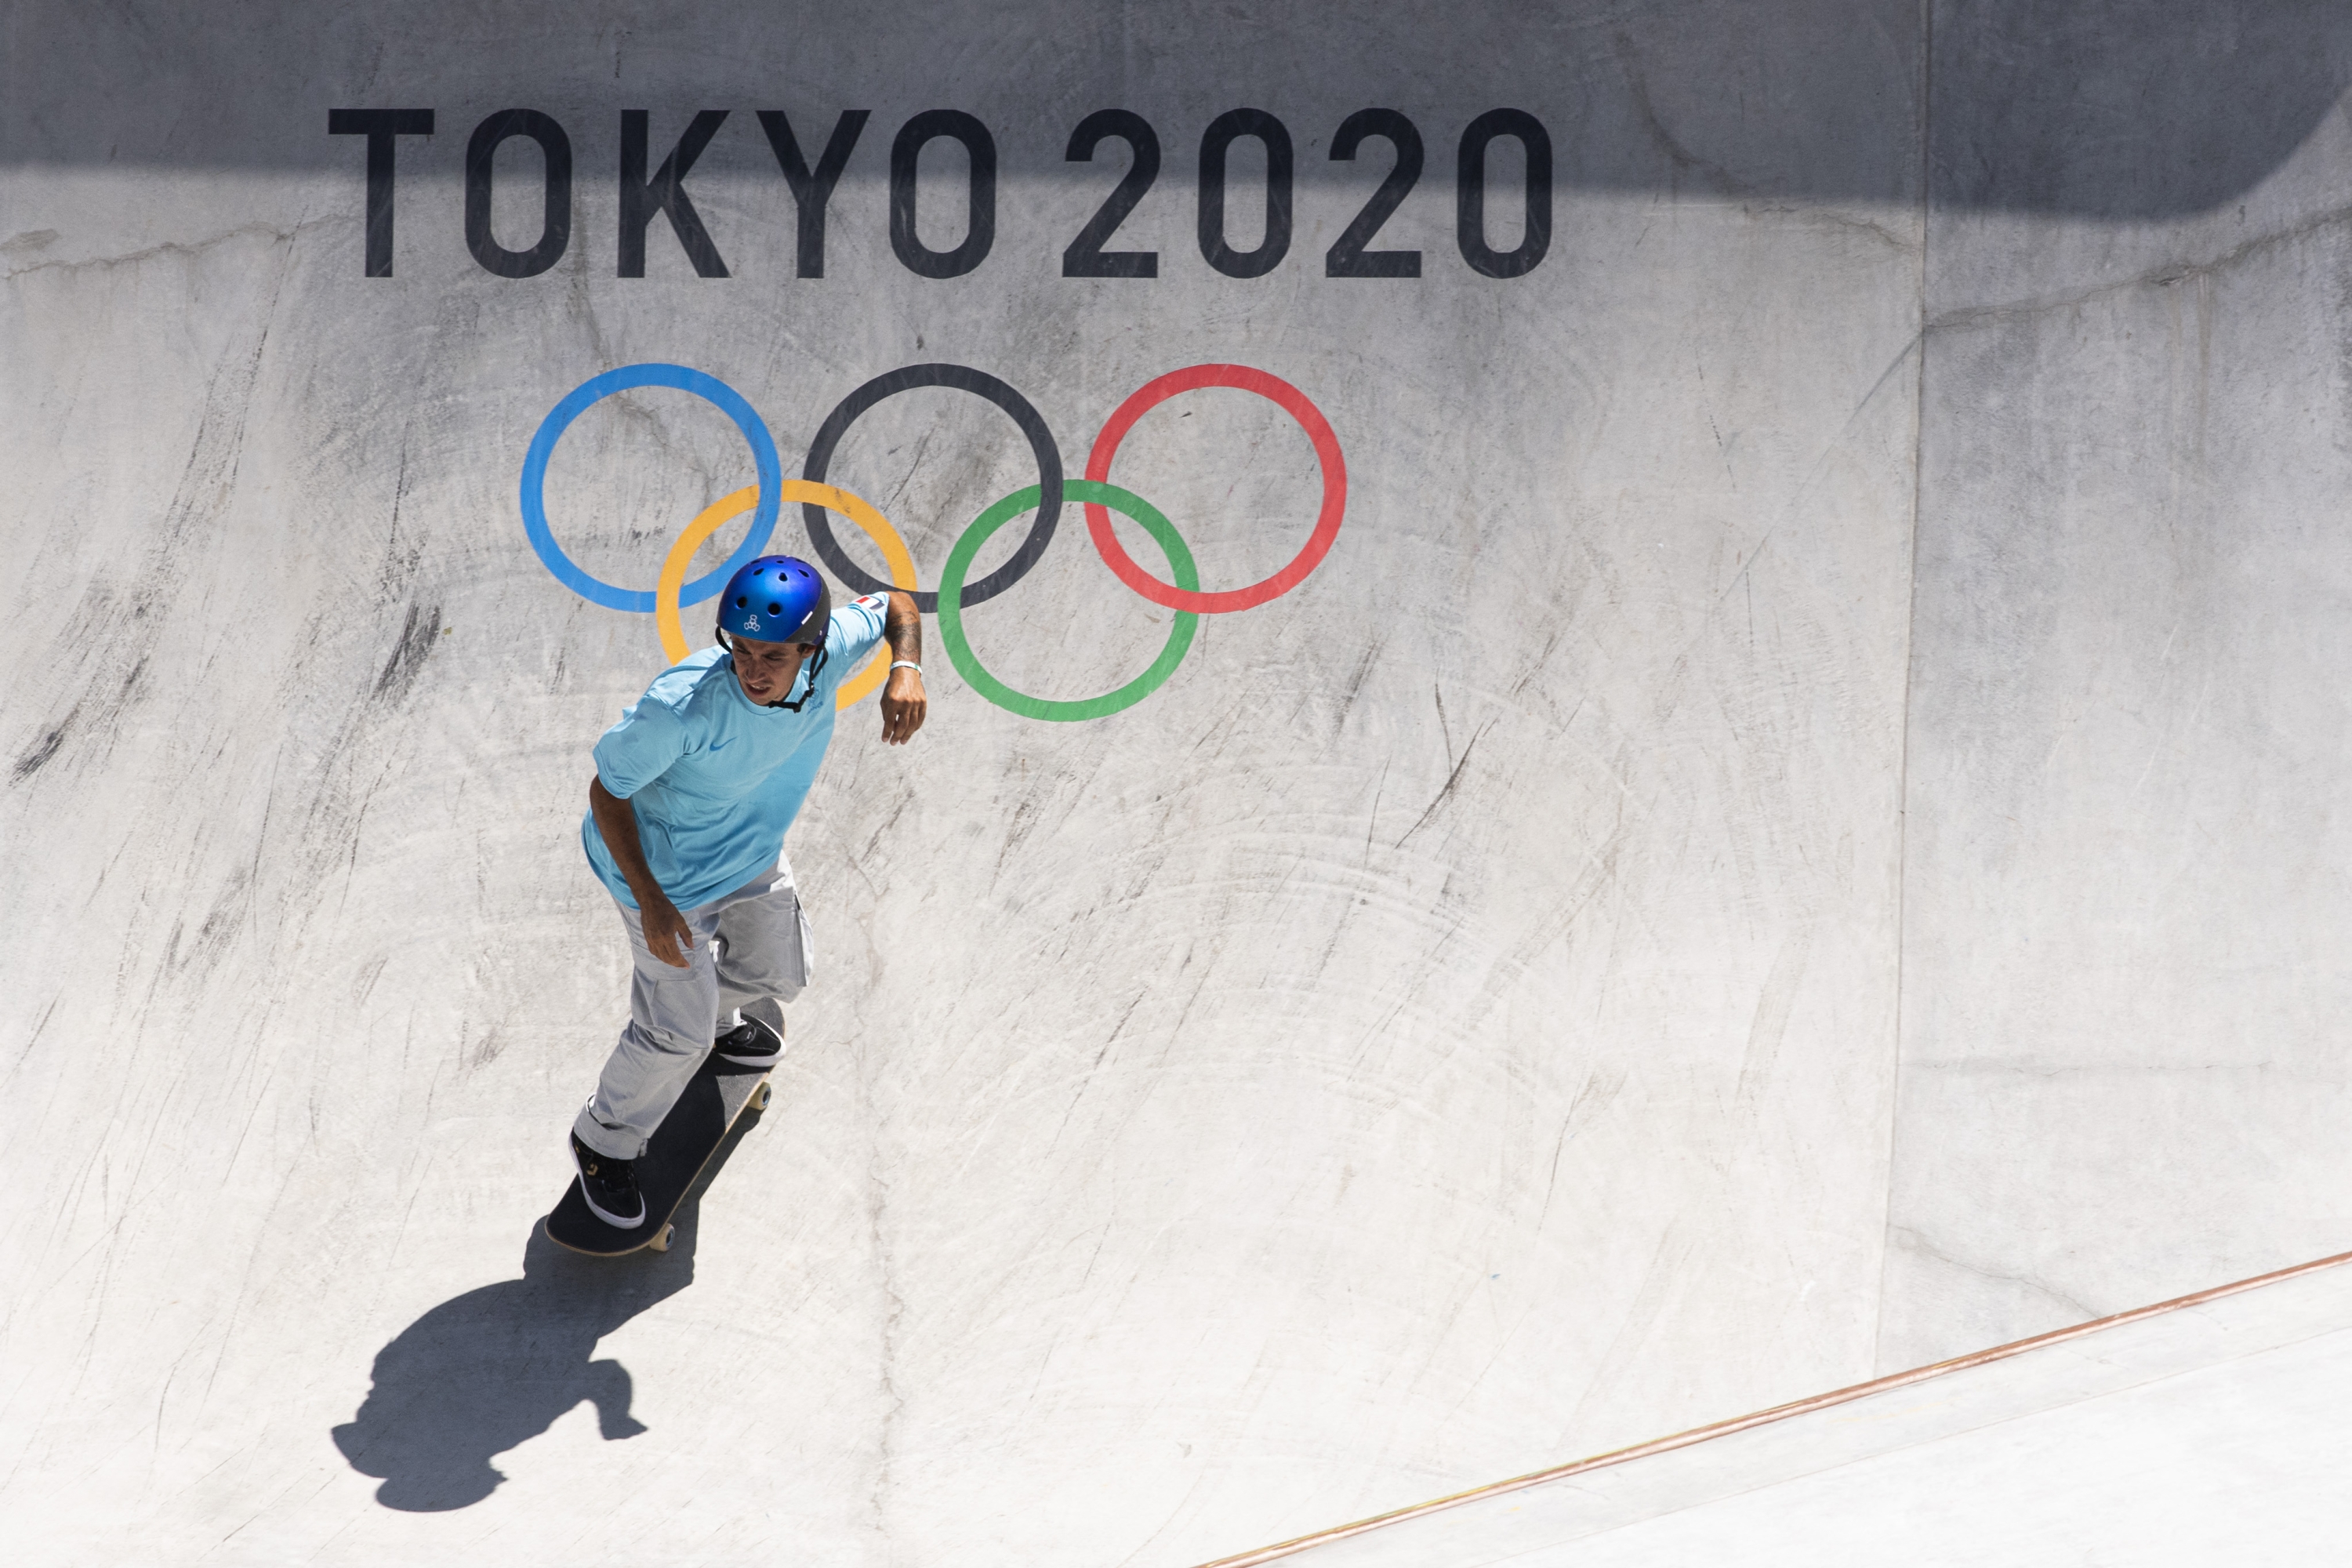 Matheron Vincent (FRA) compite en Skateboarding Men's Park durante los Juegos Olímpicos Tokio 2020, en el Ariake Urban Sports Park, el 05 de agosto de 2021, en Tokio, Japón, Foto Vincent Curutchet / KMSP (Foto de CURUTCHET Vincent / KMSP / KMSP vía AFP )